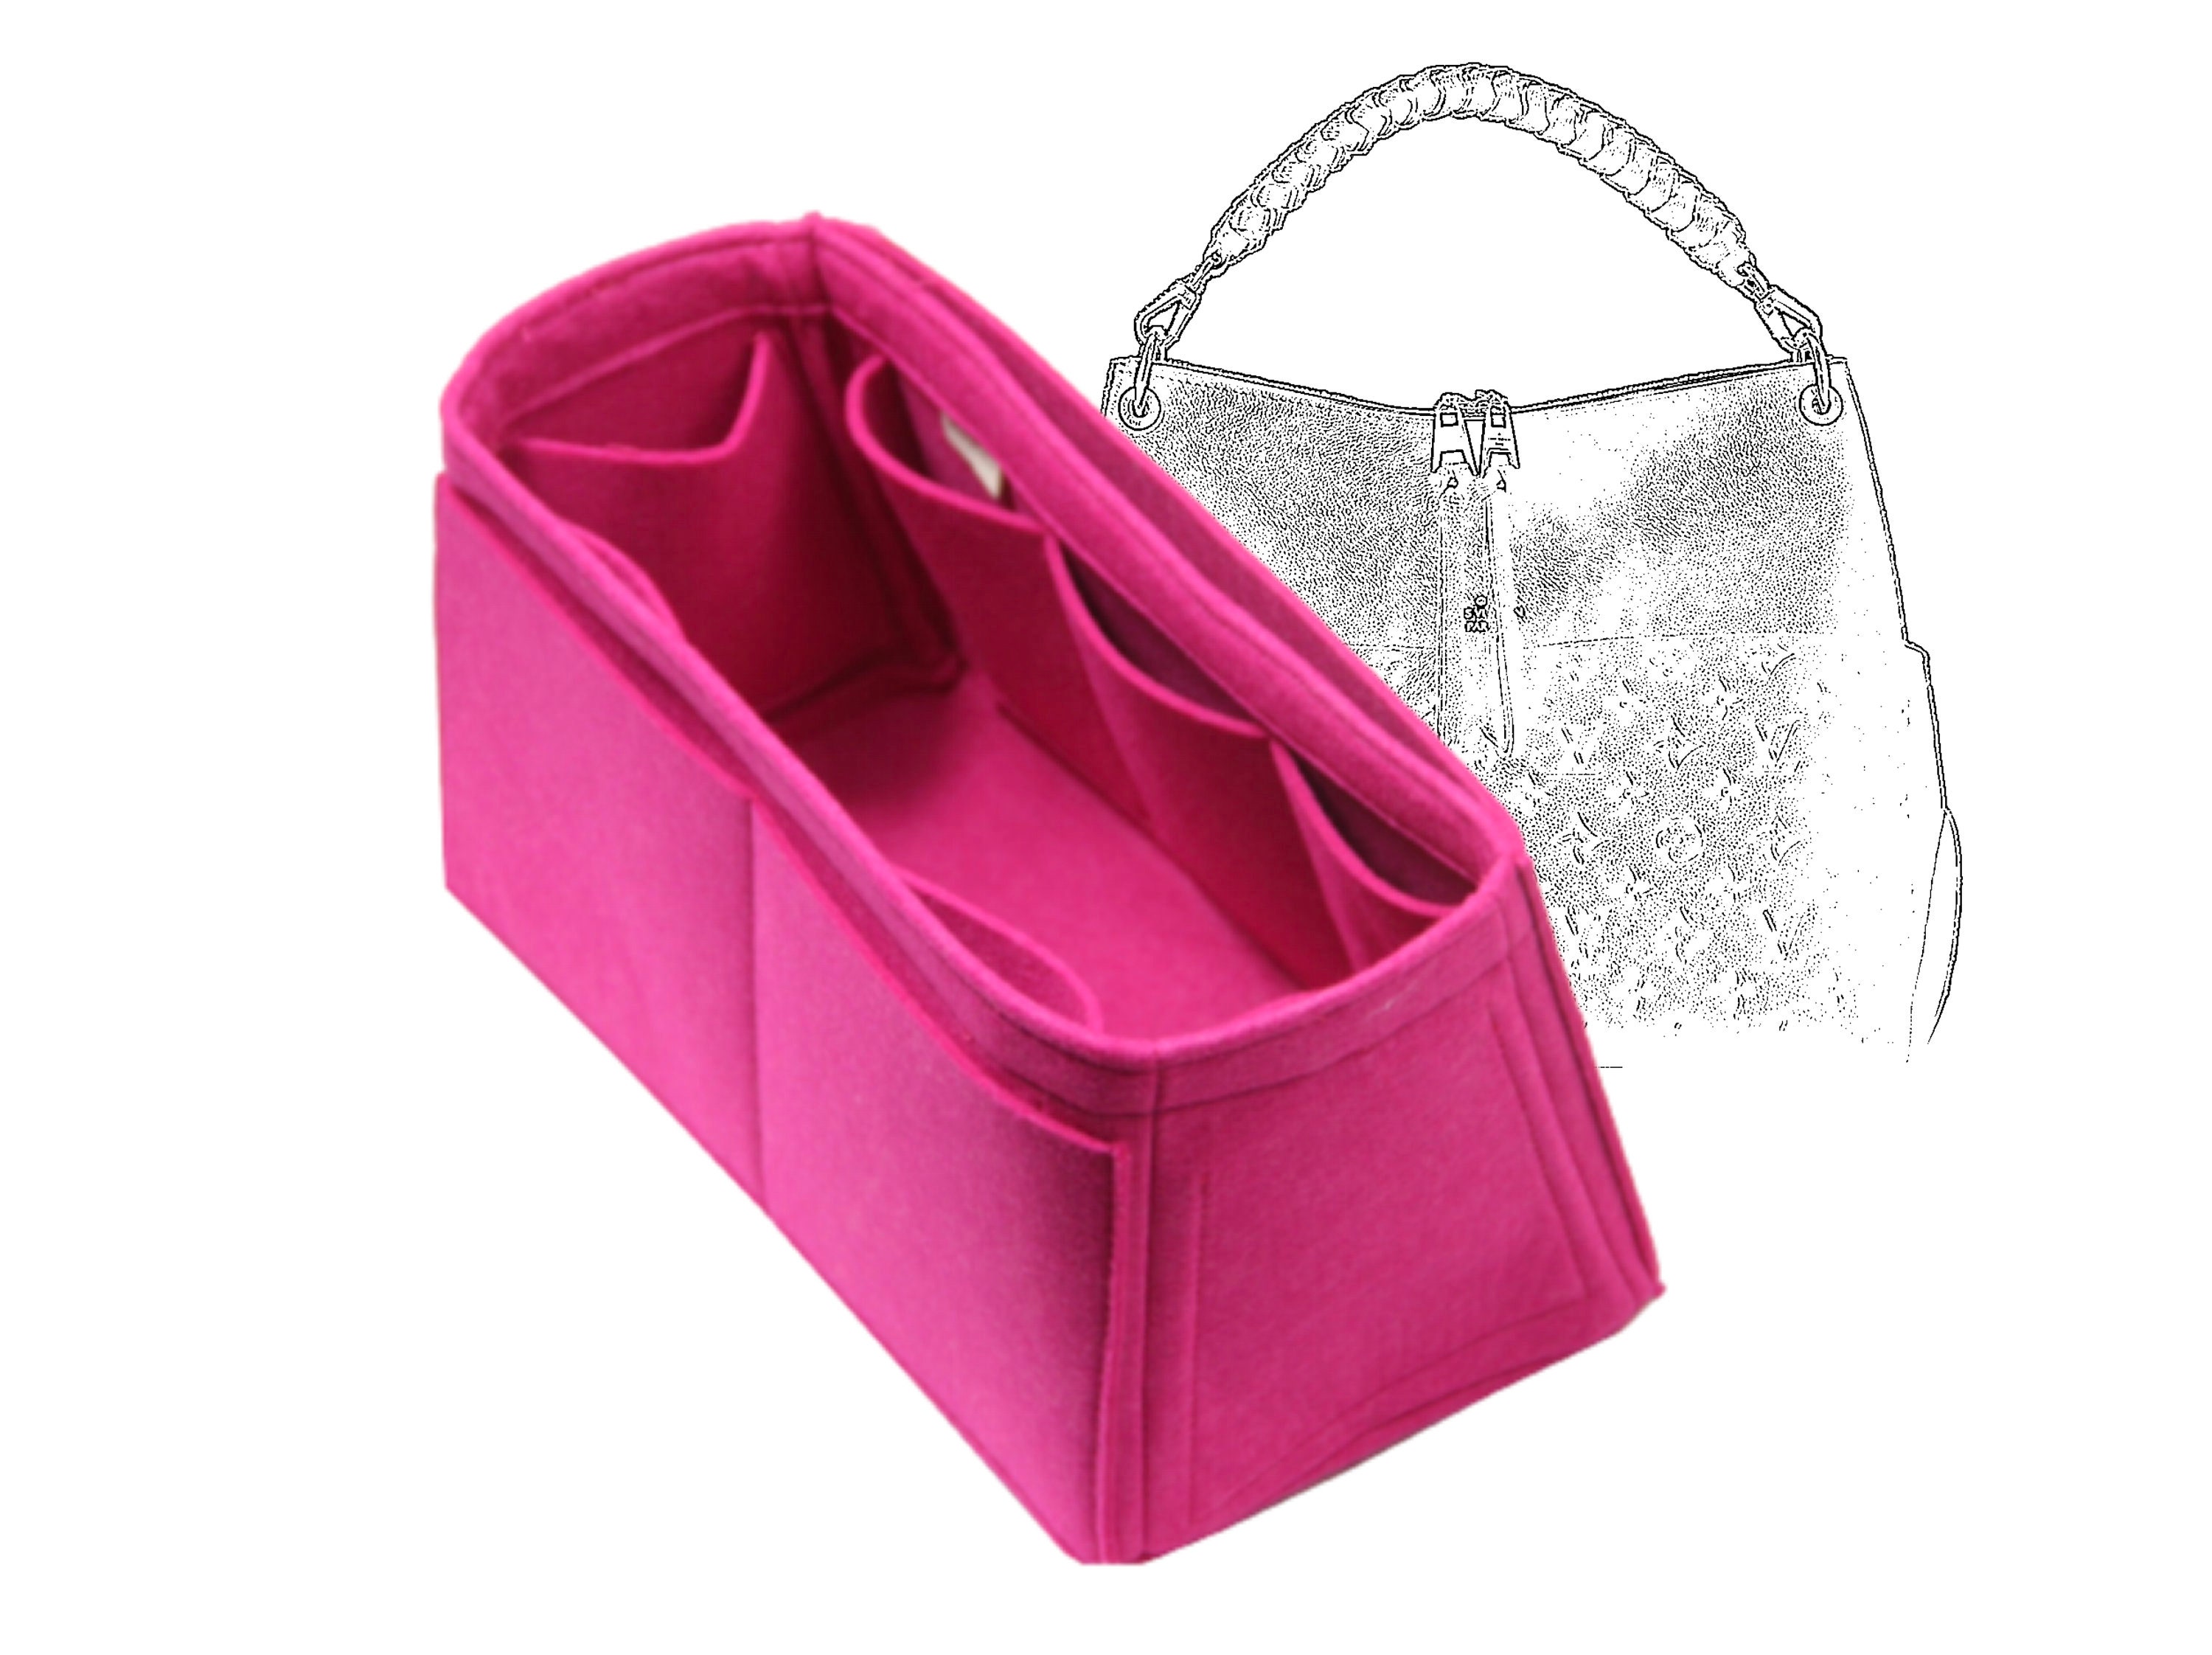 LIZHYY Velvet 2 Packs Purse Organizer Women's Handbag Organizers Bag Organizer Insert Purse Organizer for LV NeoNoe Noé Series (Pink) (Brown)